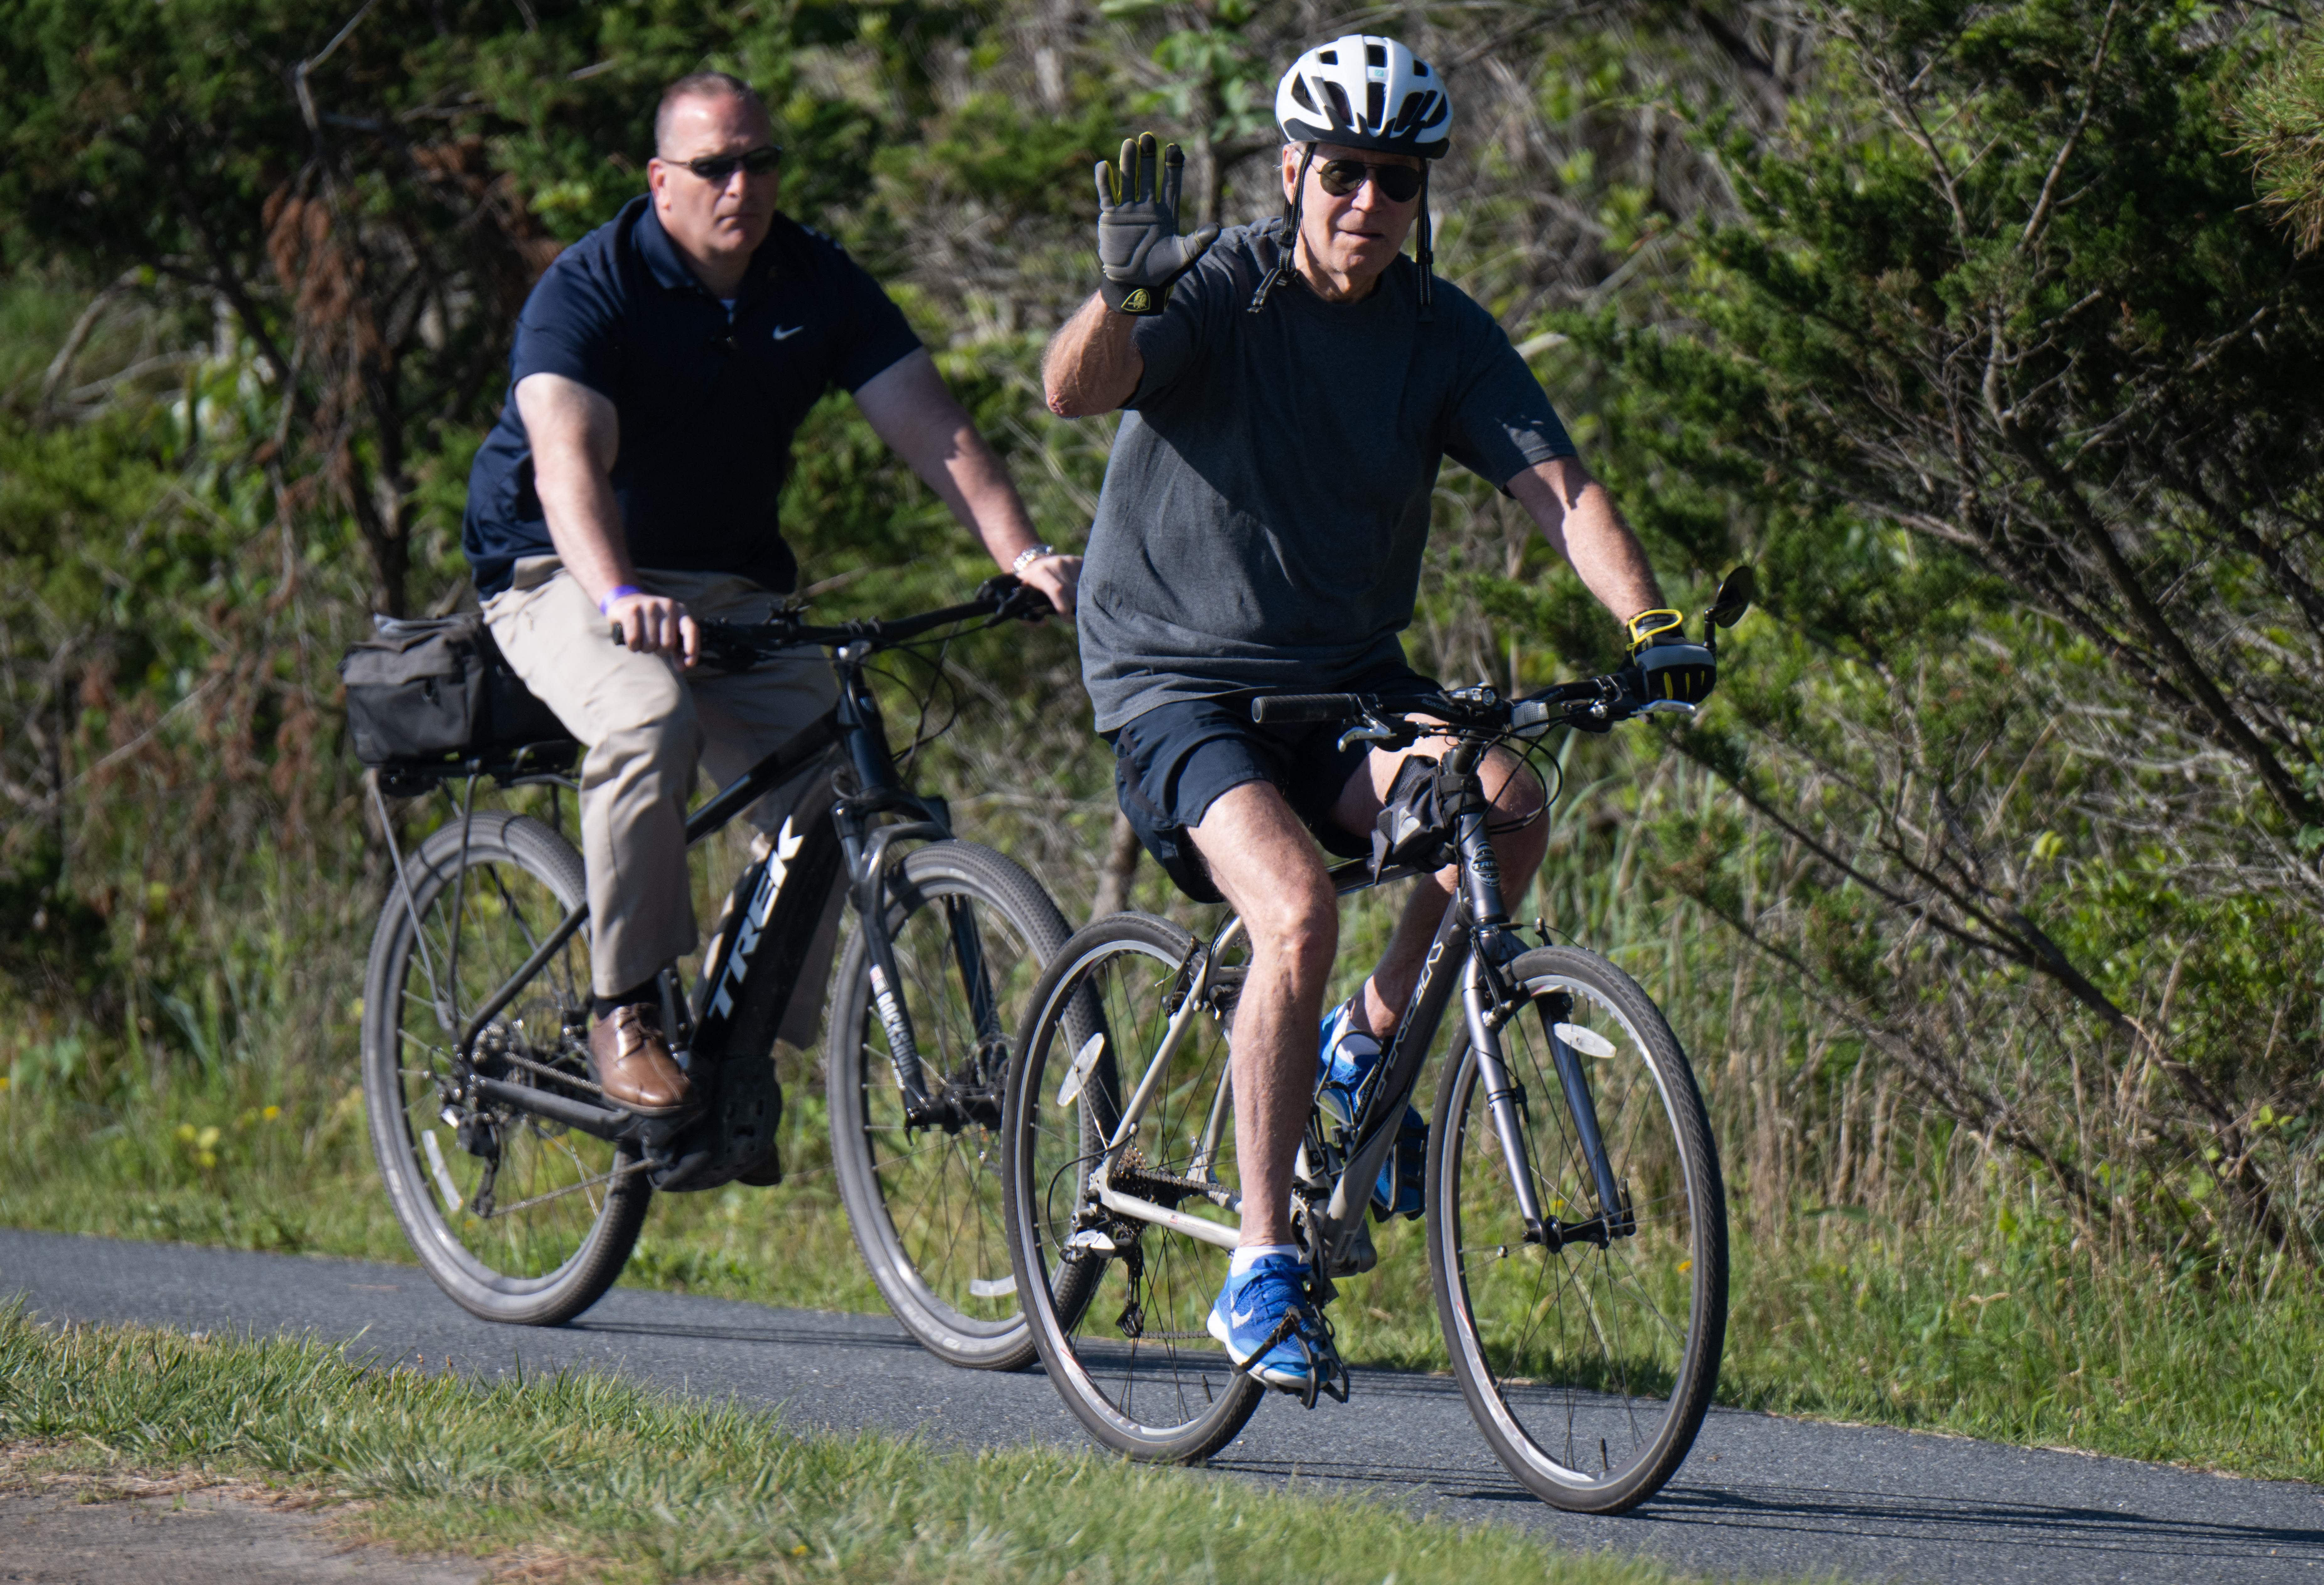 Le président Biden a de la chance de ne pas se casser la hanche: doc sportif